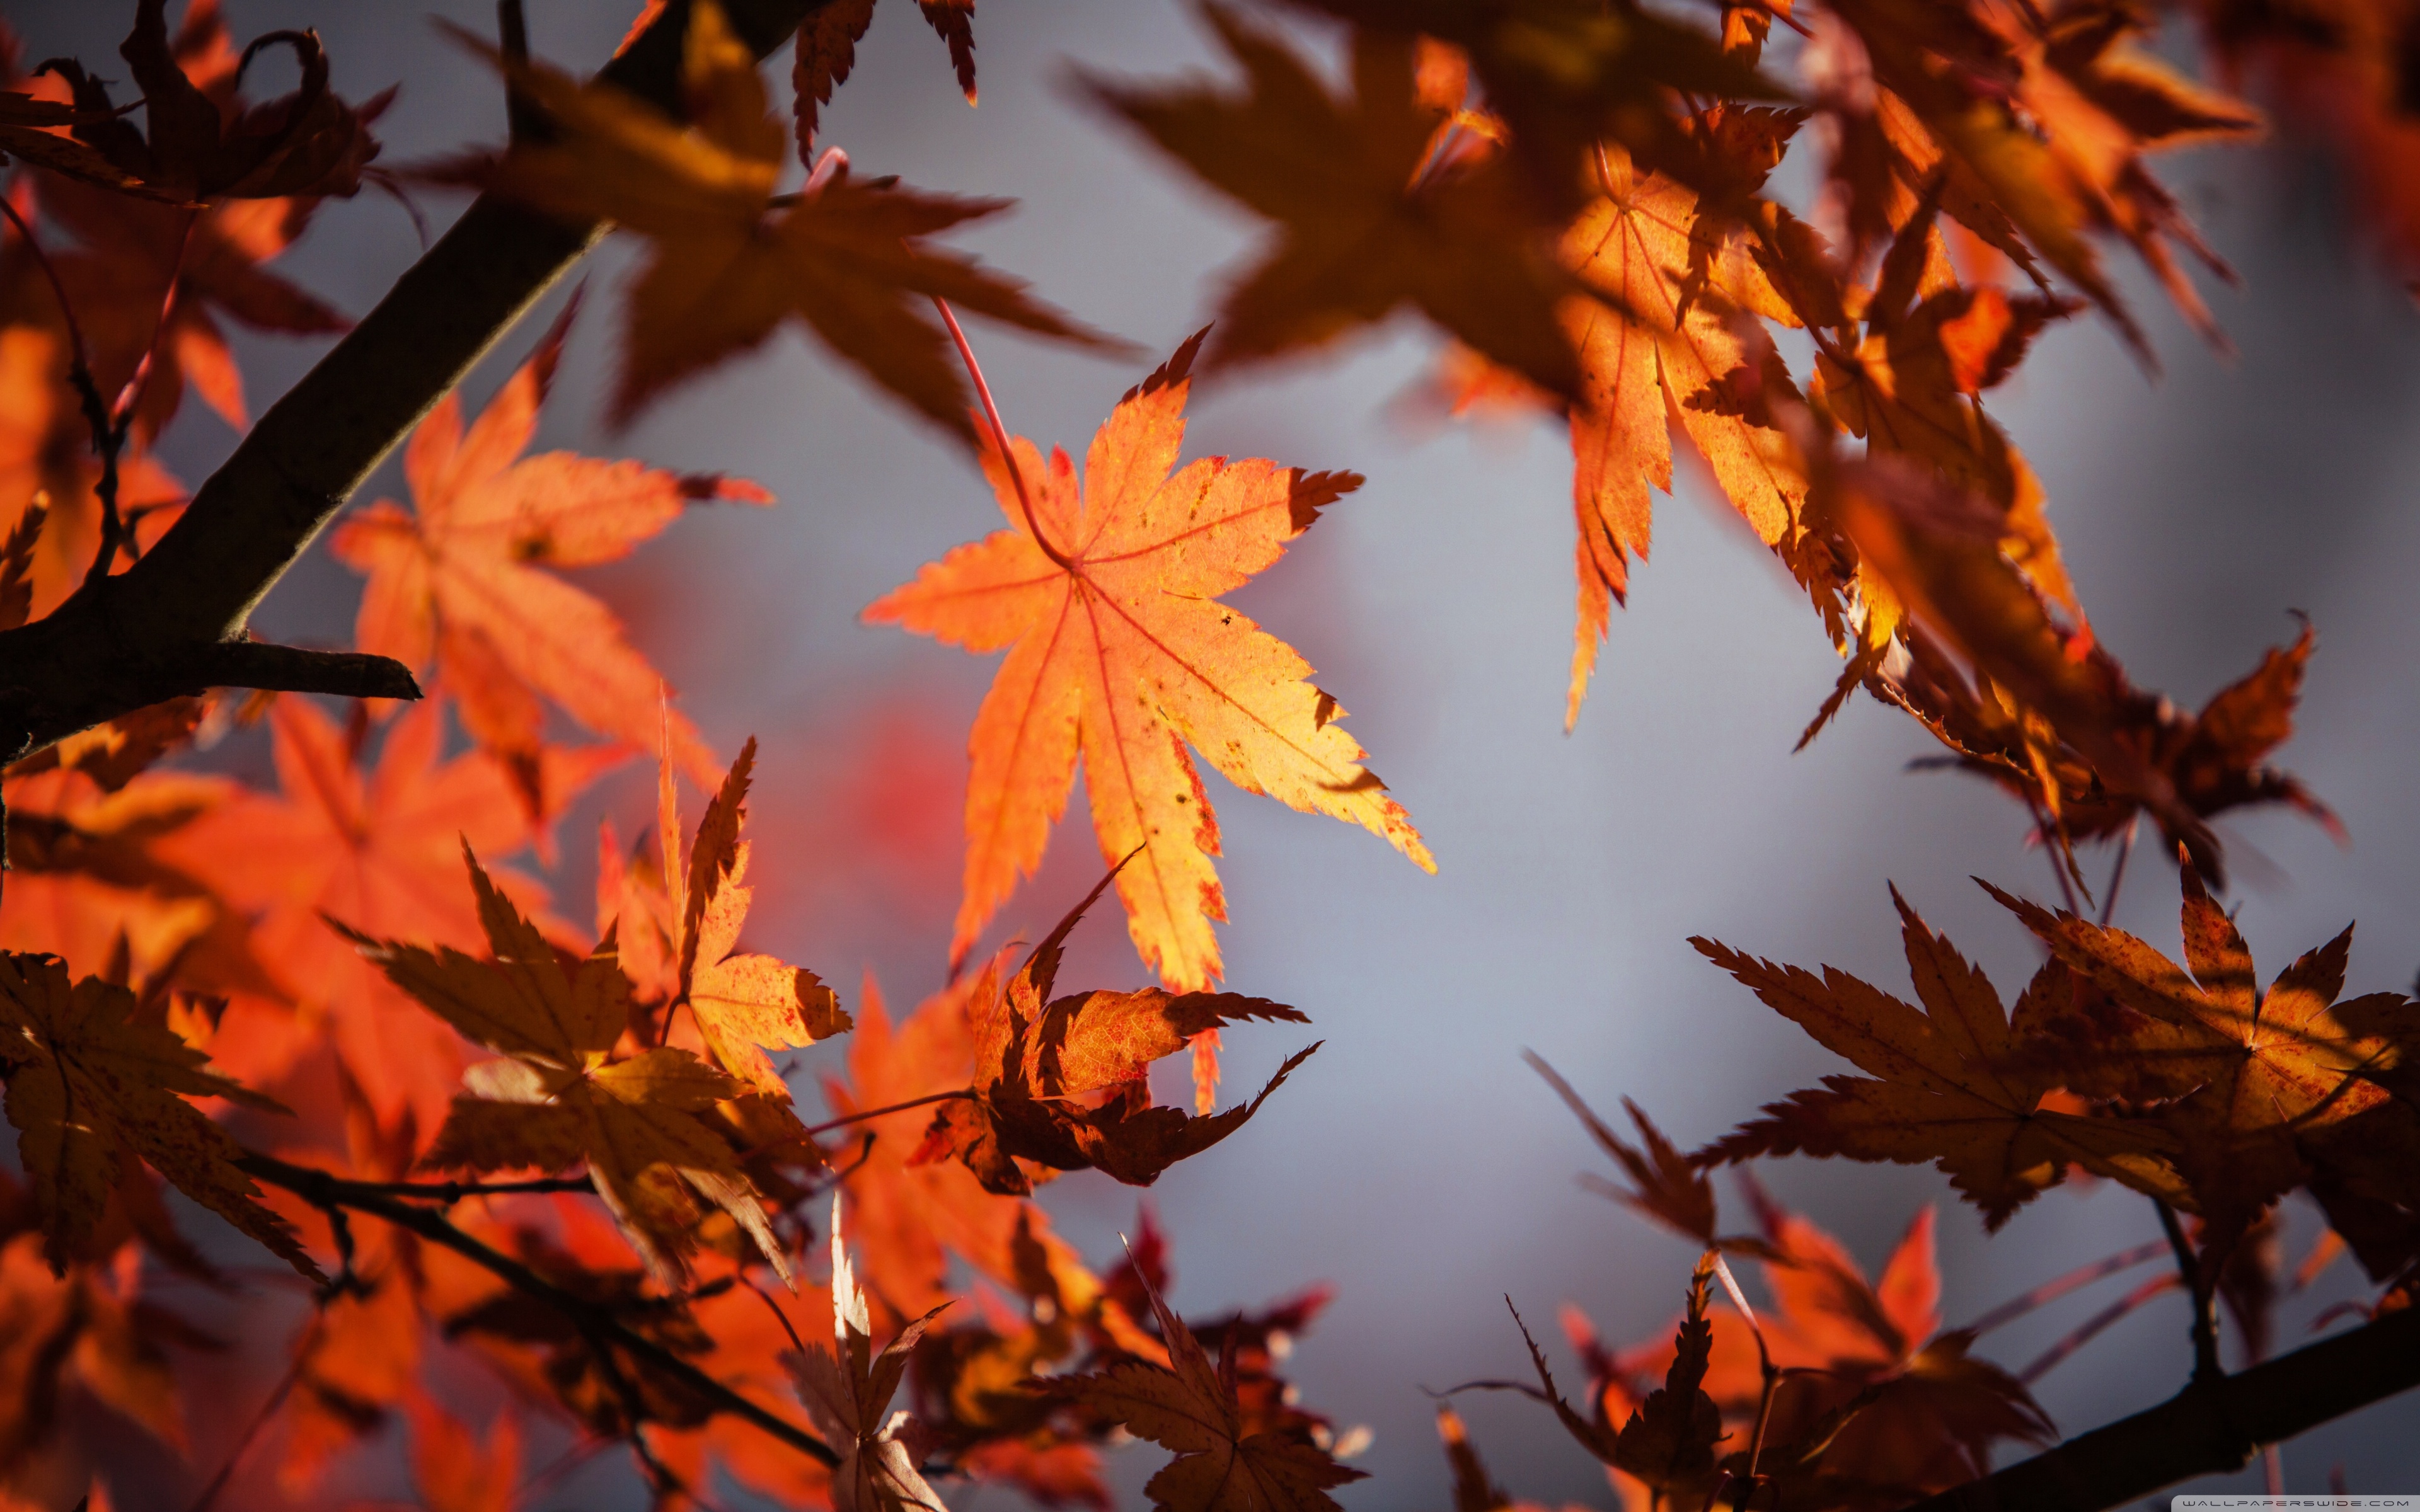 Mùa thu (Autumn) - Mùa thu là một trong những thời điểm đẹp nhất trong năm với sắc vàng rực rỡ của cây lá, tiếng rơi từng cánh lá rụng. Hãy chiêm ngưỡng bức ảnh đẹp về mùa thu và cảm nhận sự tĩnh lặng, ấm áp của mùa thu đang chờ đón bạn.